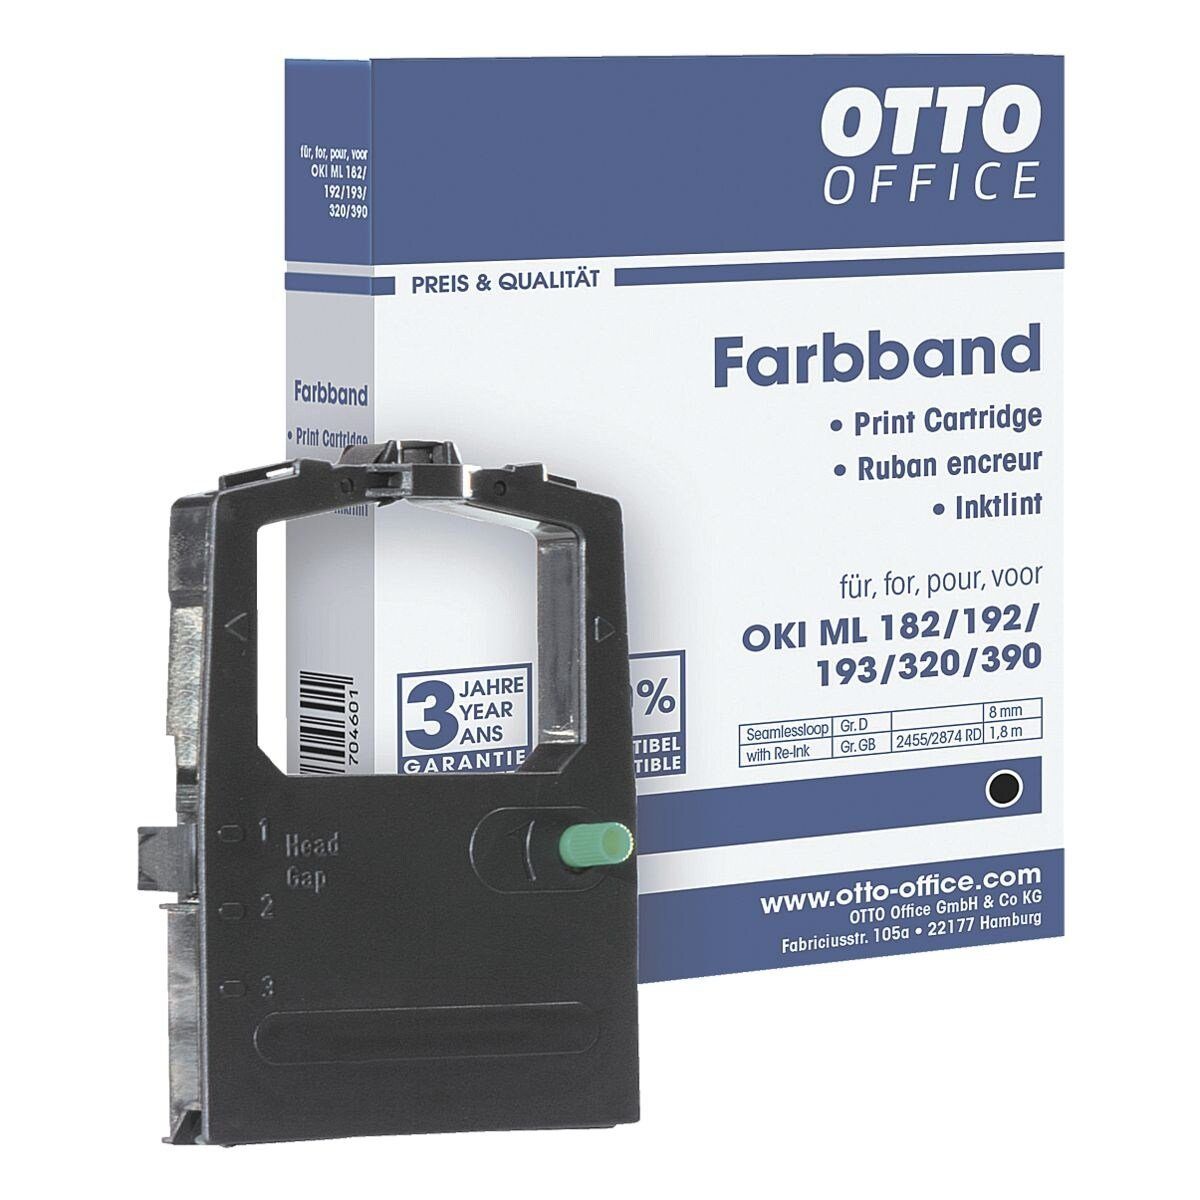 Otto Office Druckerband ML, Farbband OKI für Office schwarz Nadeldrucker,